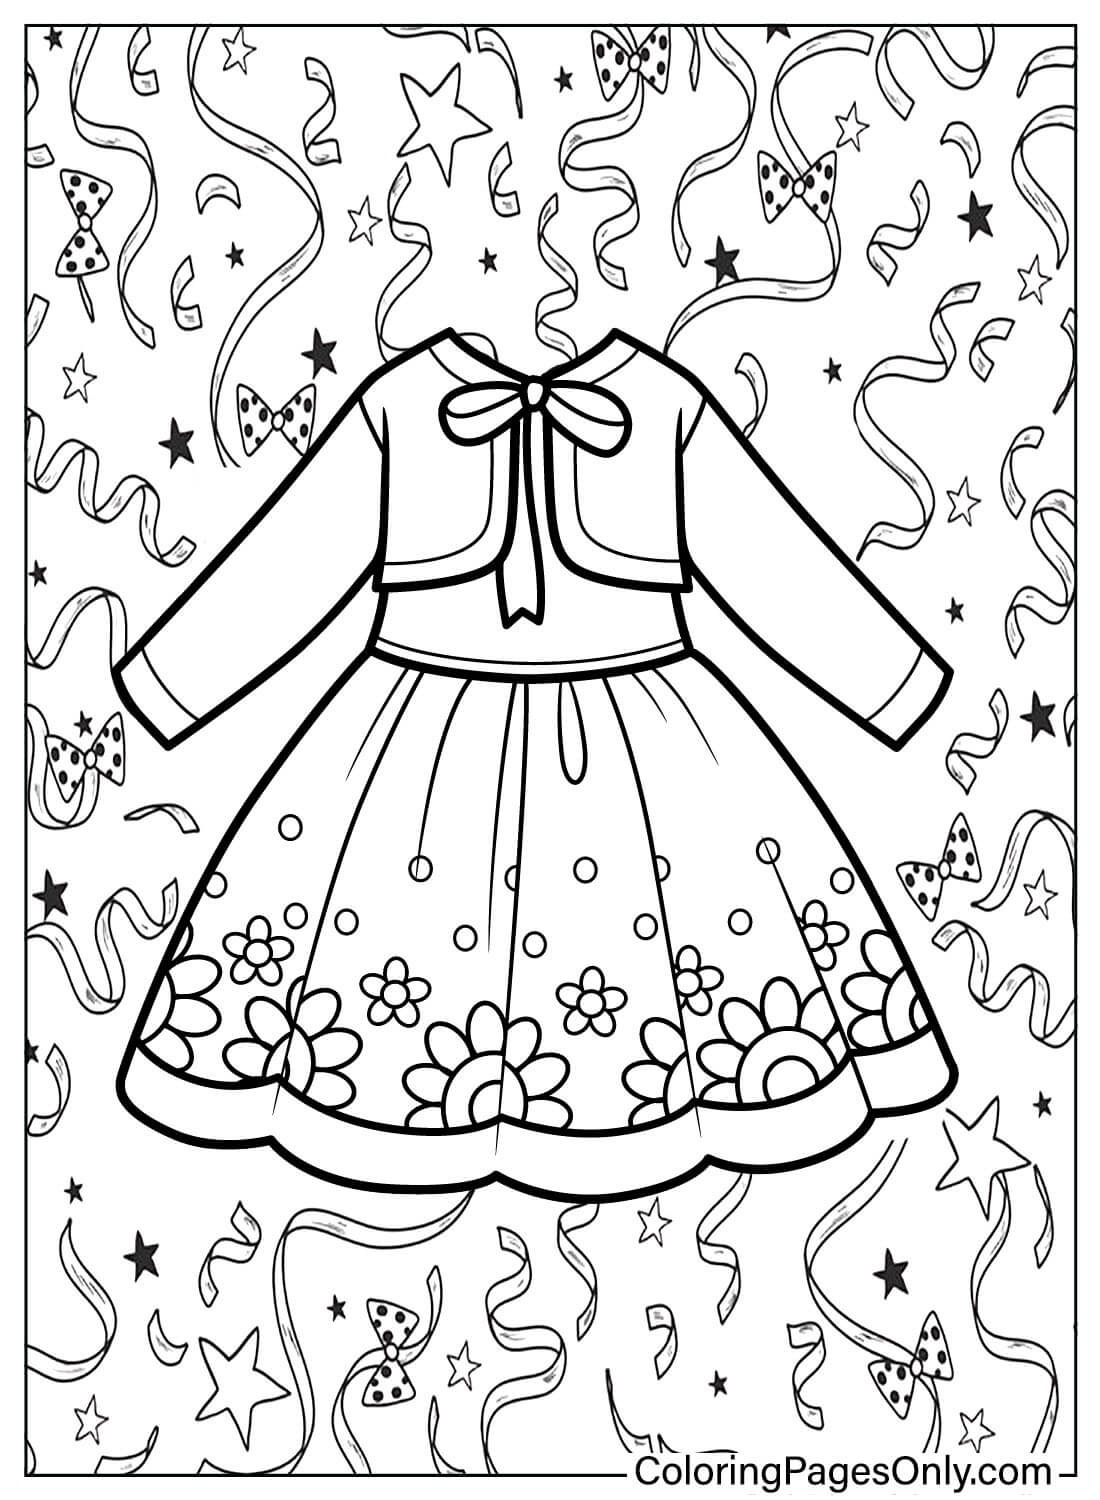 صفحة التلوين المجانية لباس الطفل من فستان الطفل